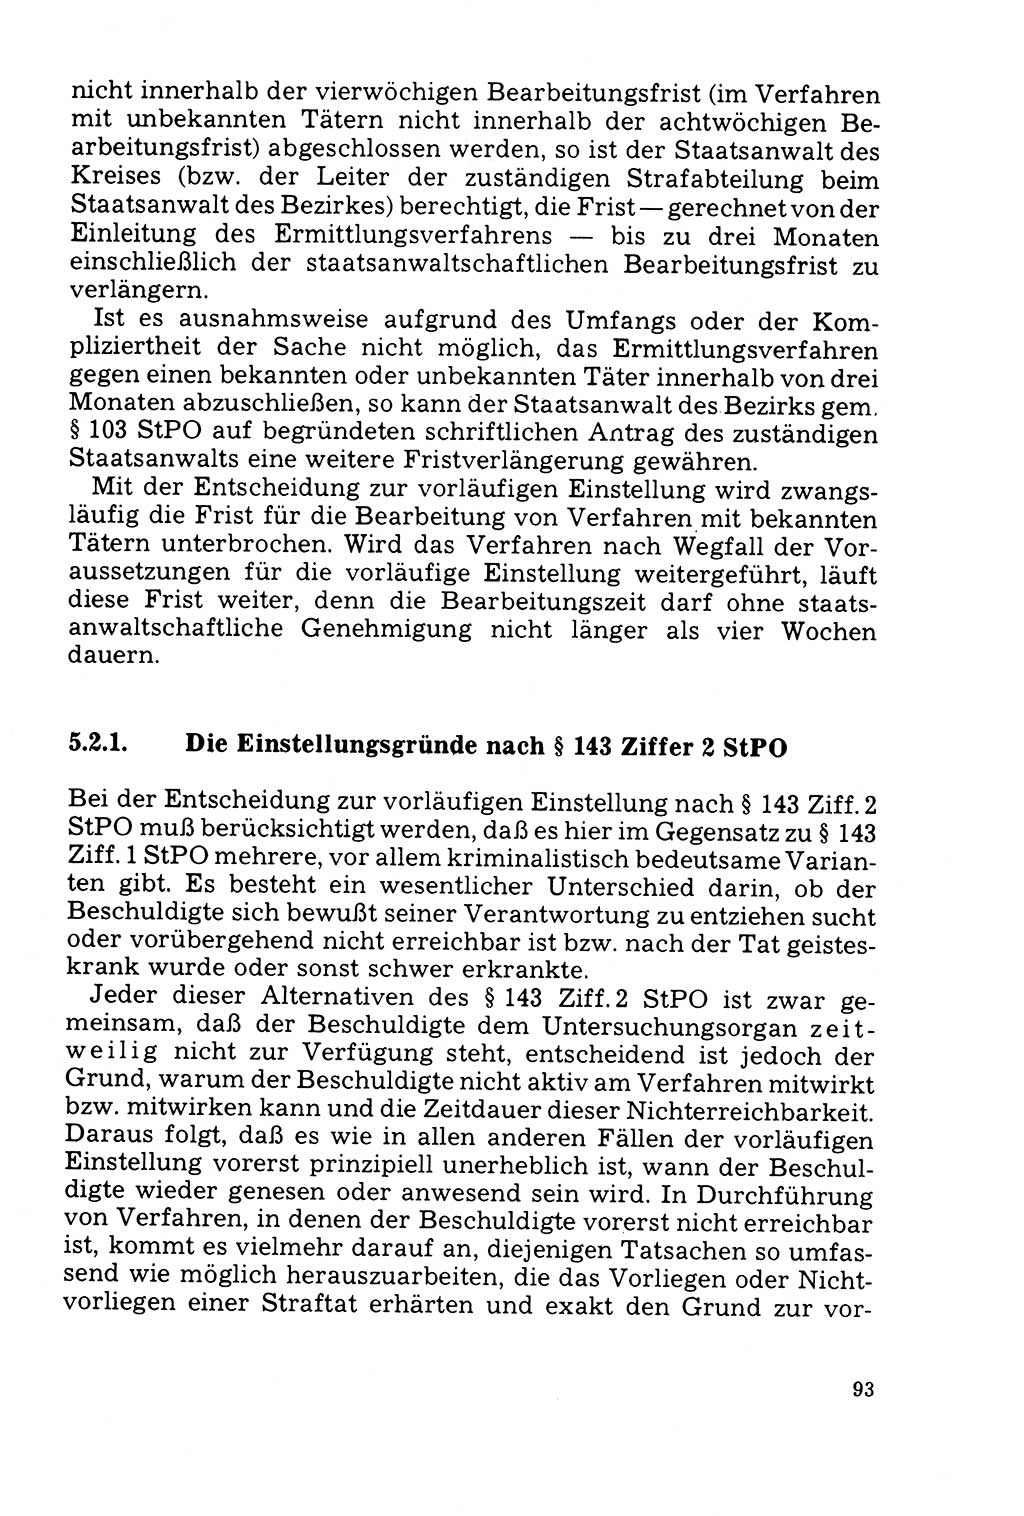 Der Abschluß des Ermittlungsverfahrens [Deutsche Demokratische Republik (DDR)] 1978, Seite 93 (Abschl. EV DDR 1978, S. 93)